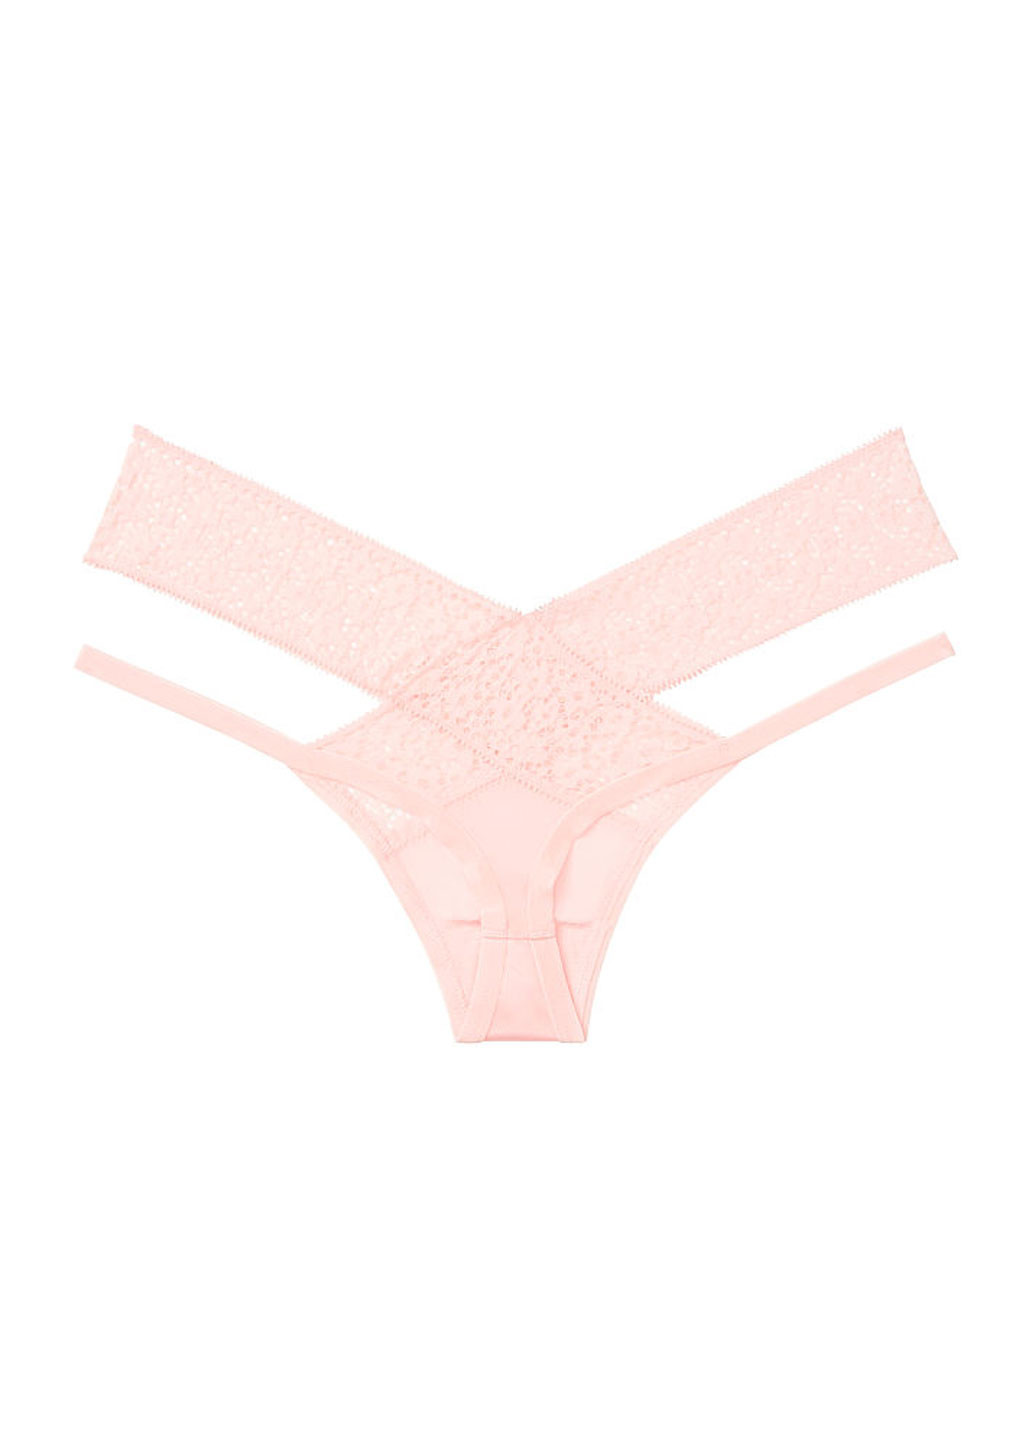 Трусики Victoria's Secret стрінги однотонні світло-рожеві відверті поліамід